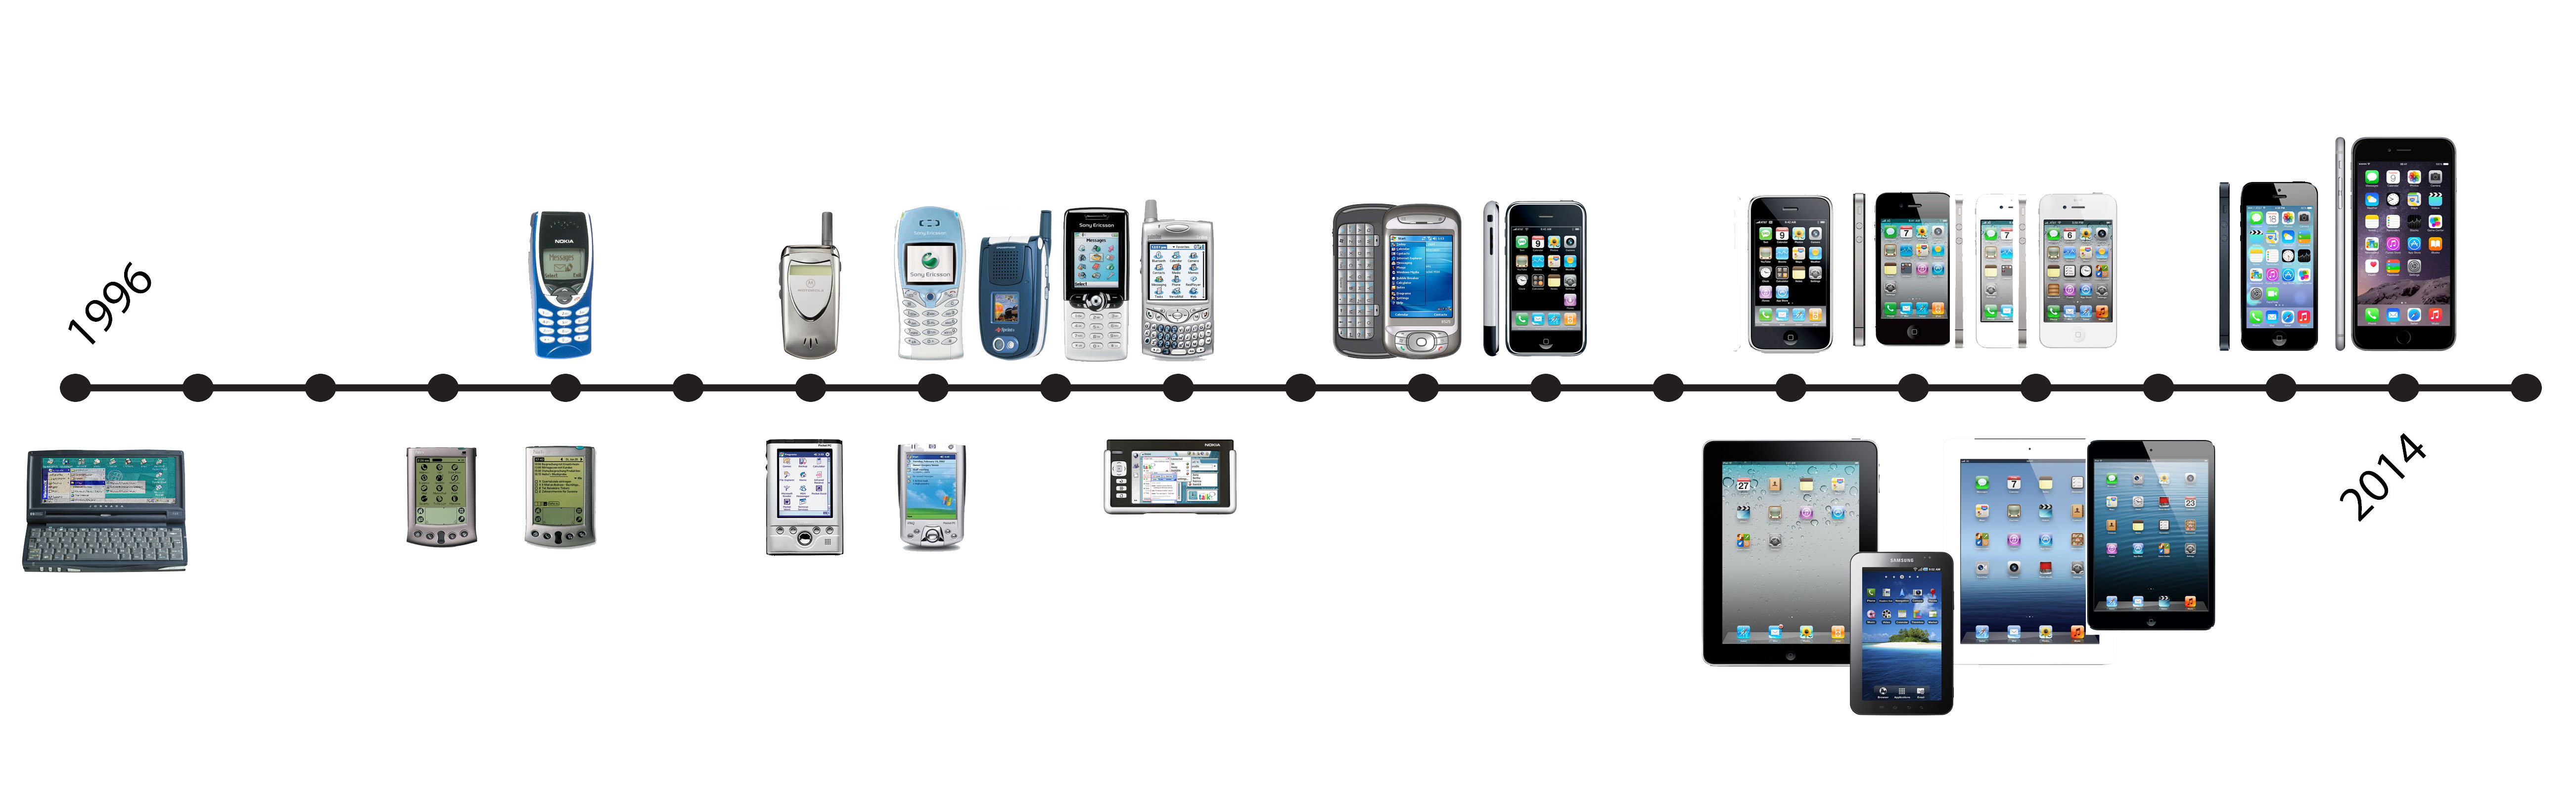 Эволюция сотовой связи. Эволюция сотовых телефонов. Эволюция развития мобильных телефонов. Эволюция мобильных телефонов в картинках.